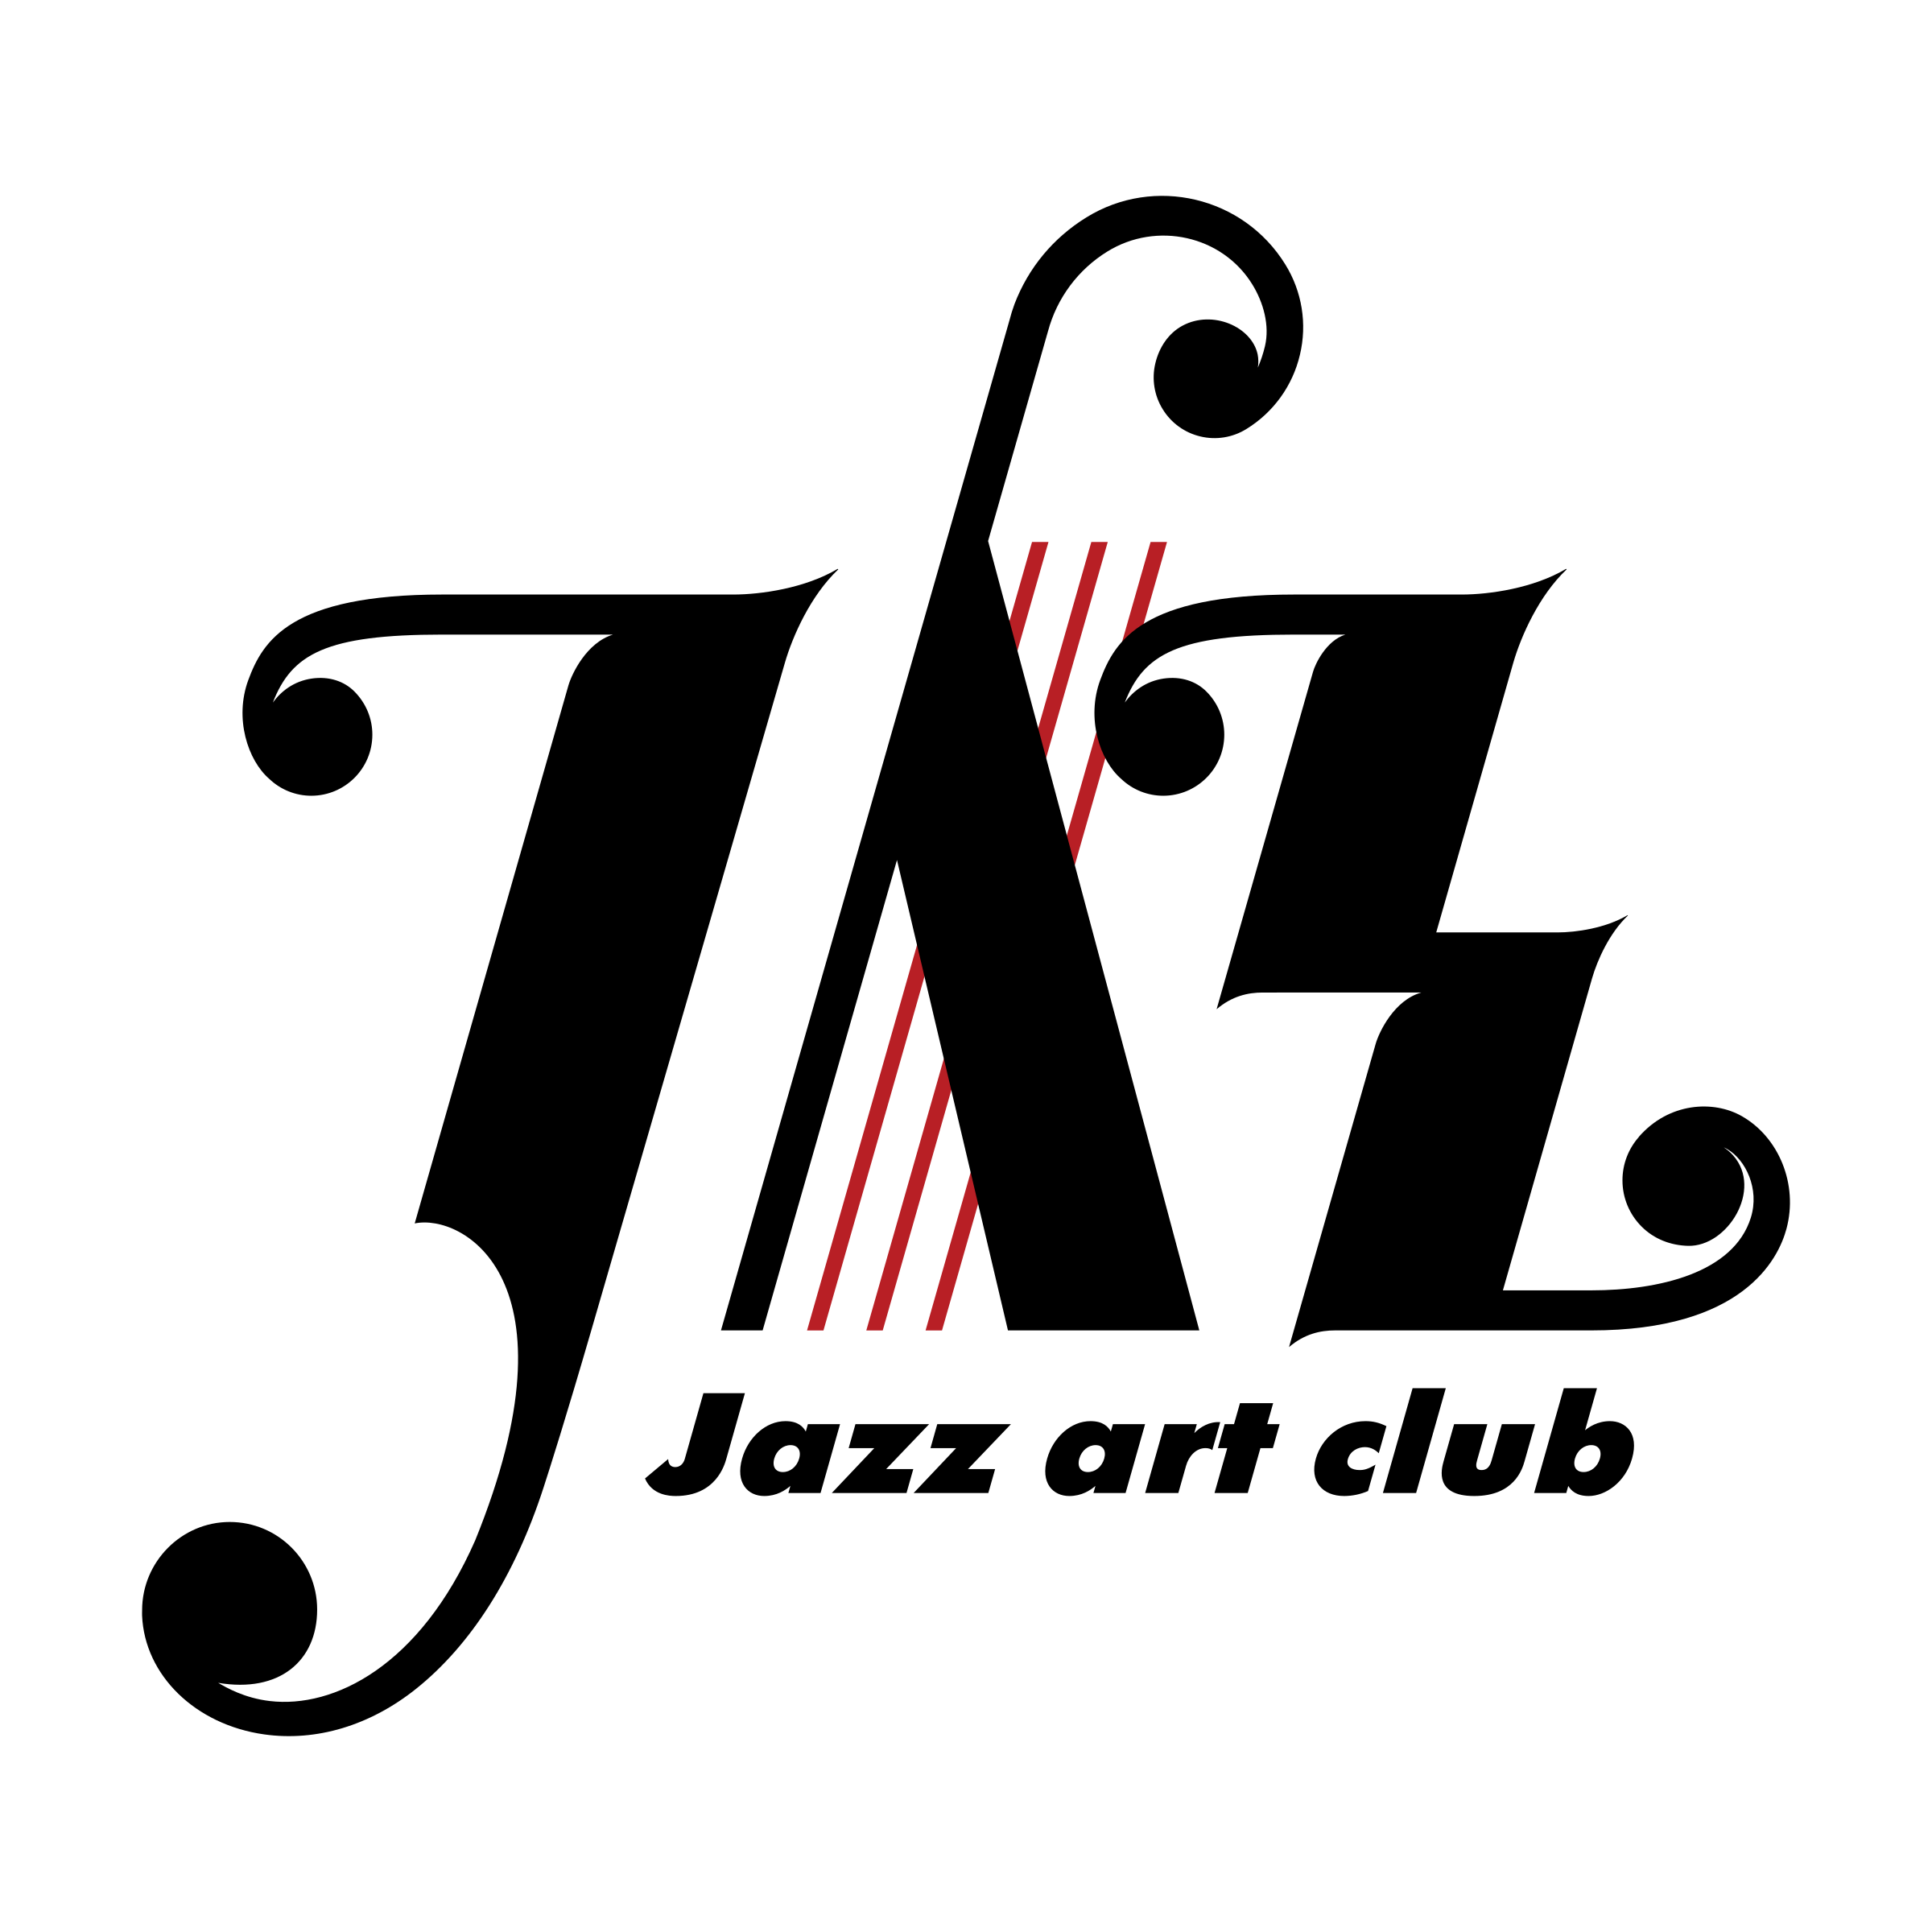 Image logo jazz PNG image